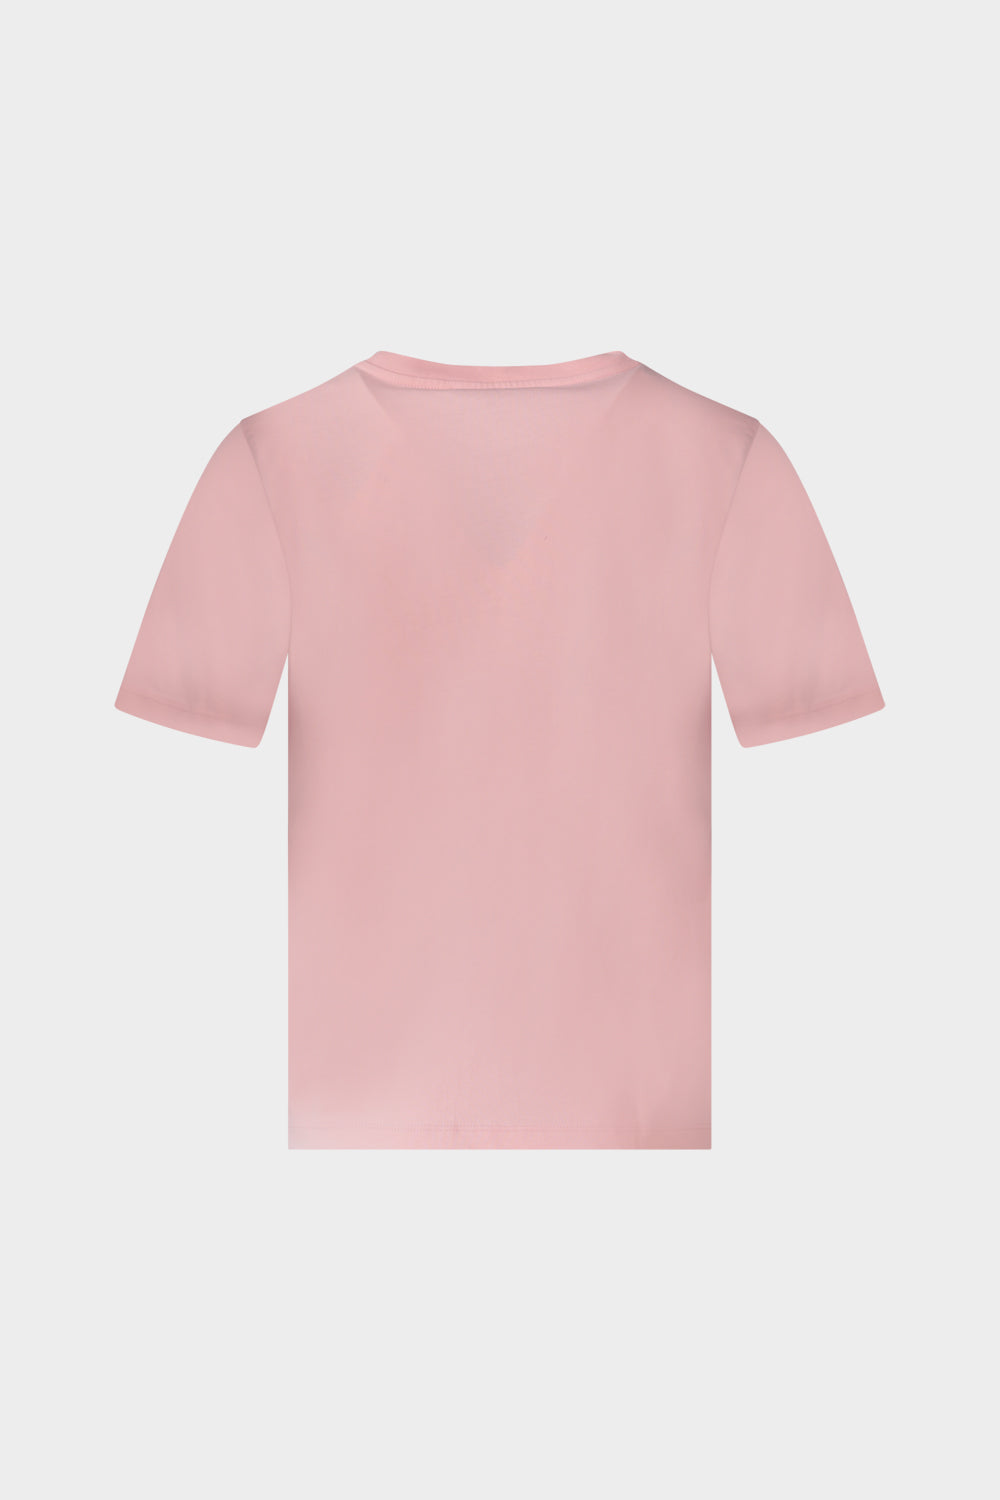 חולצת טי שירט לנשים רקמת לוגו TRUSSARDI TRUSSARDI Vendome online | ונדום .